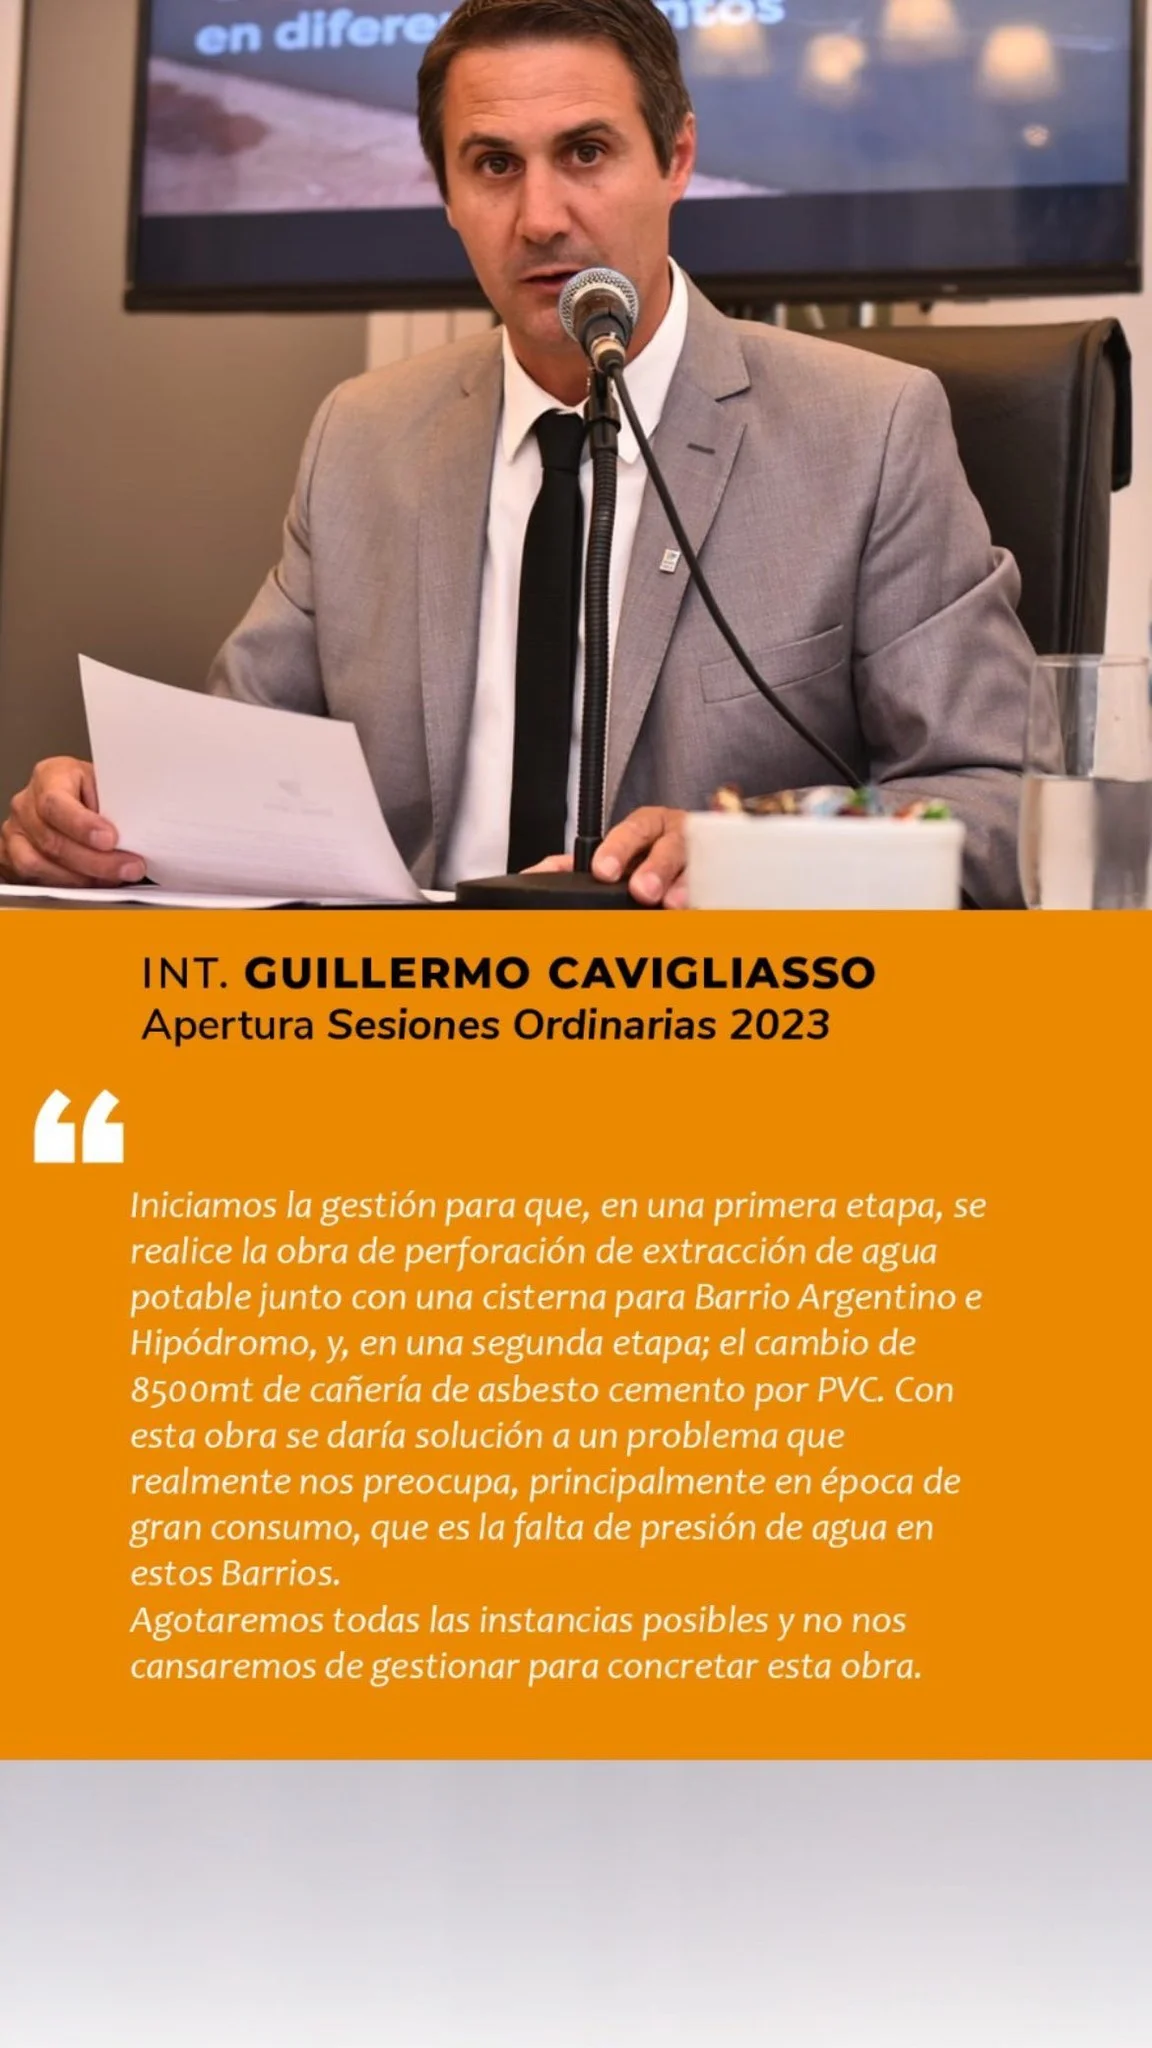 General Cabrera: Discurso de apertura de Sesiones Ordinarias ciudad